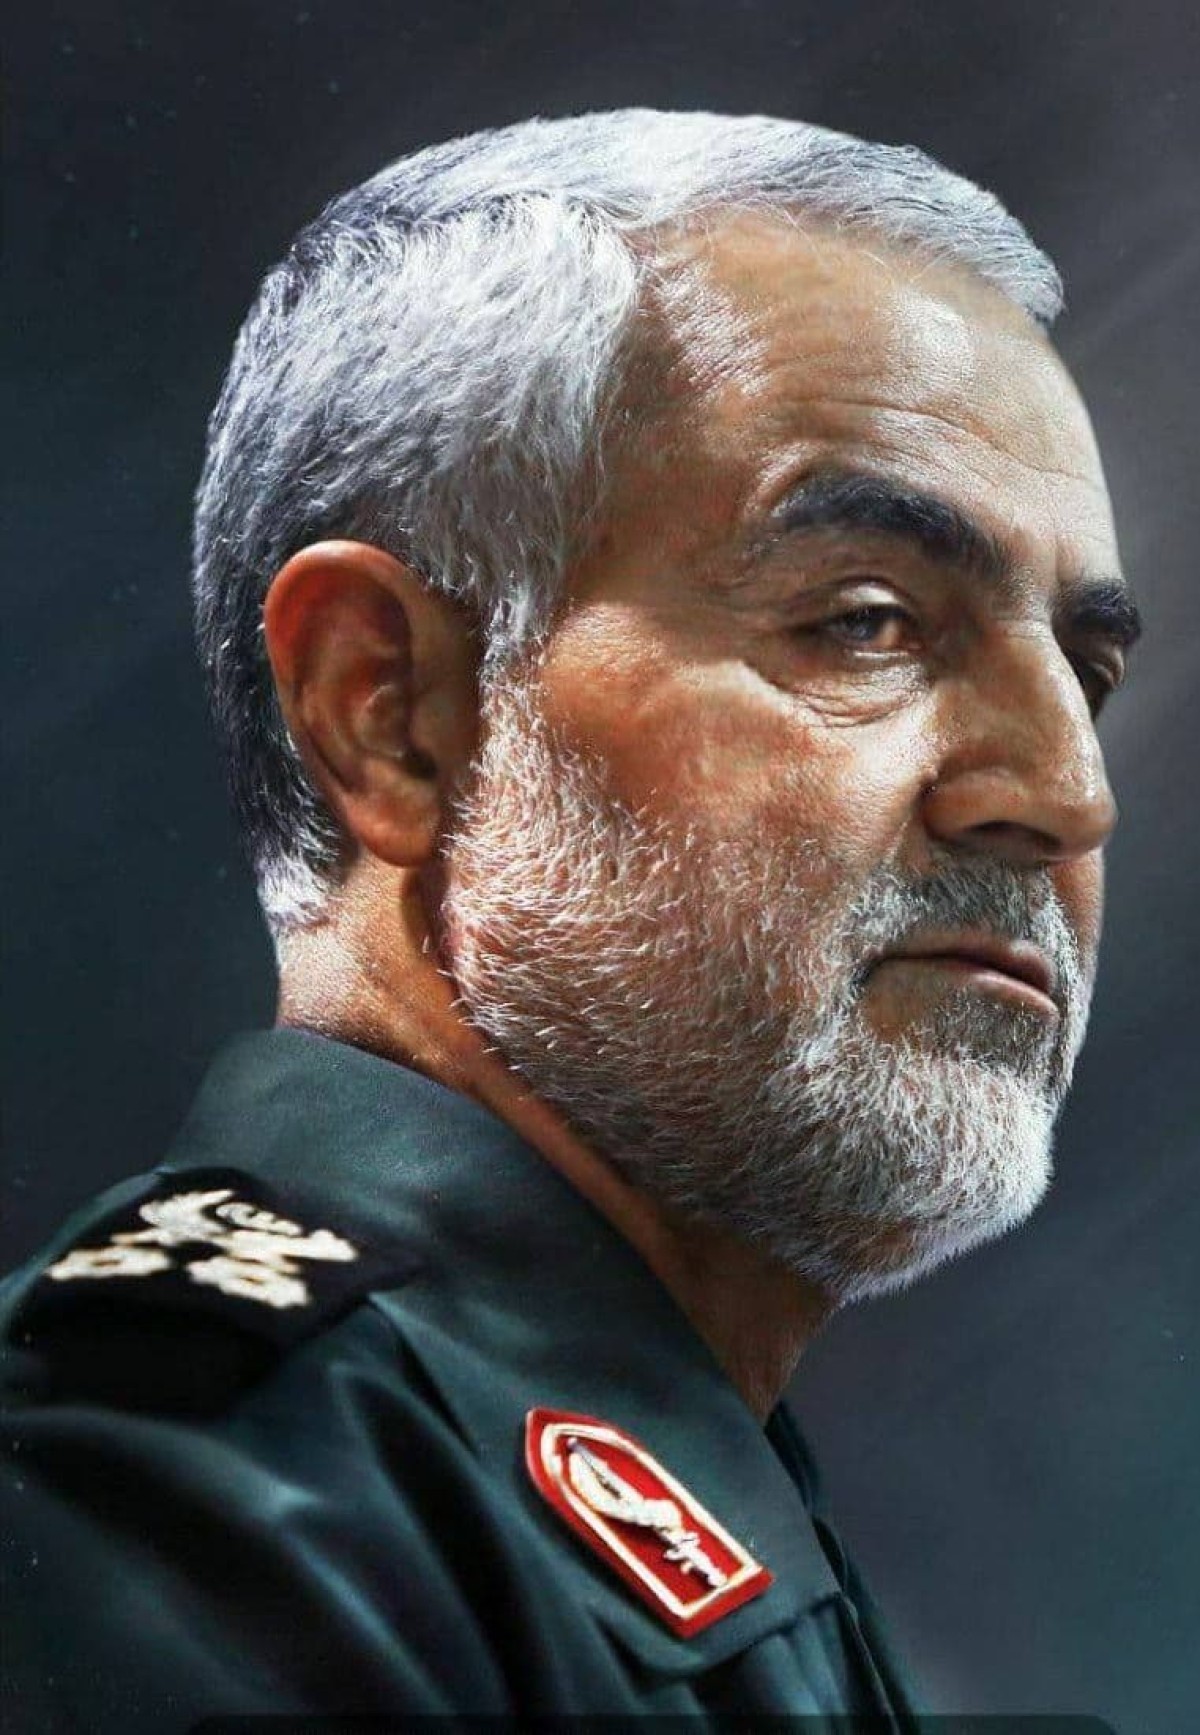  ” عندما يلقي الجنرال الإيراني بظلاله على العمل المهني لوسائل الإعلام “